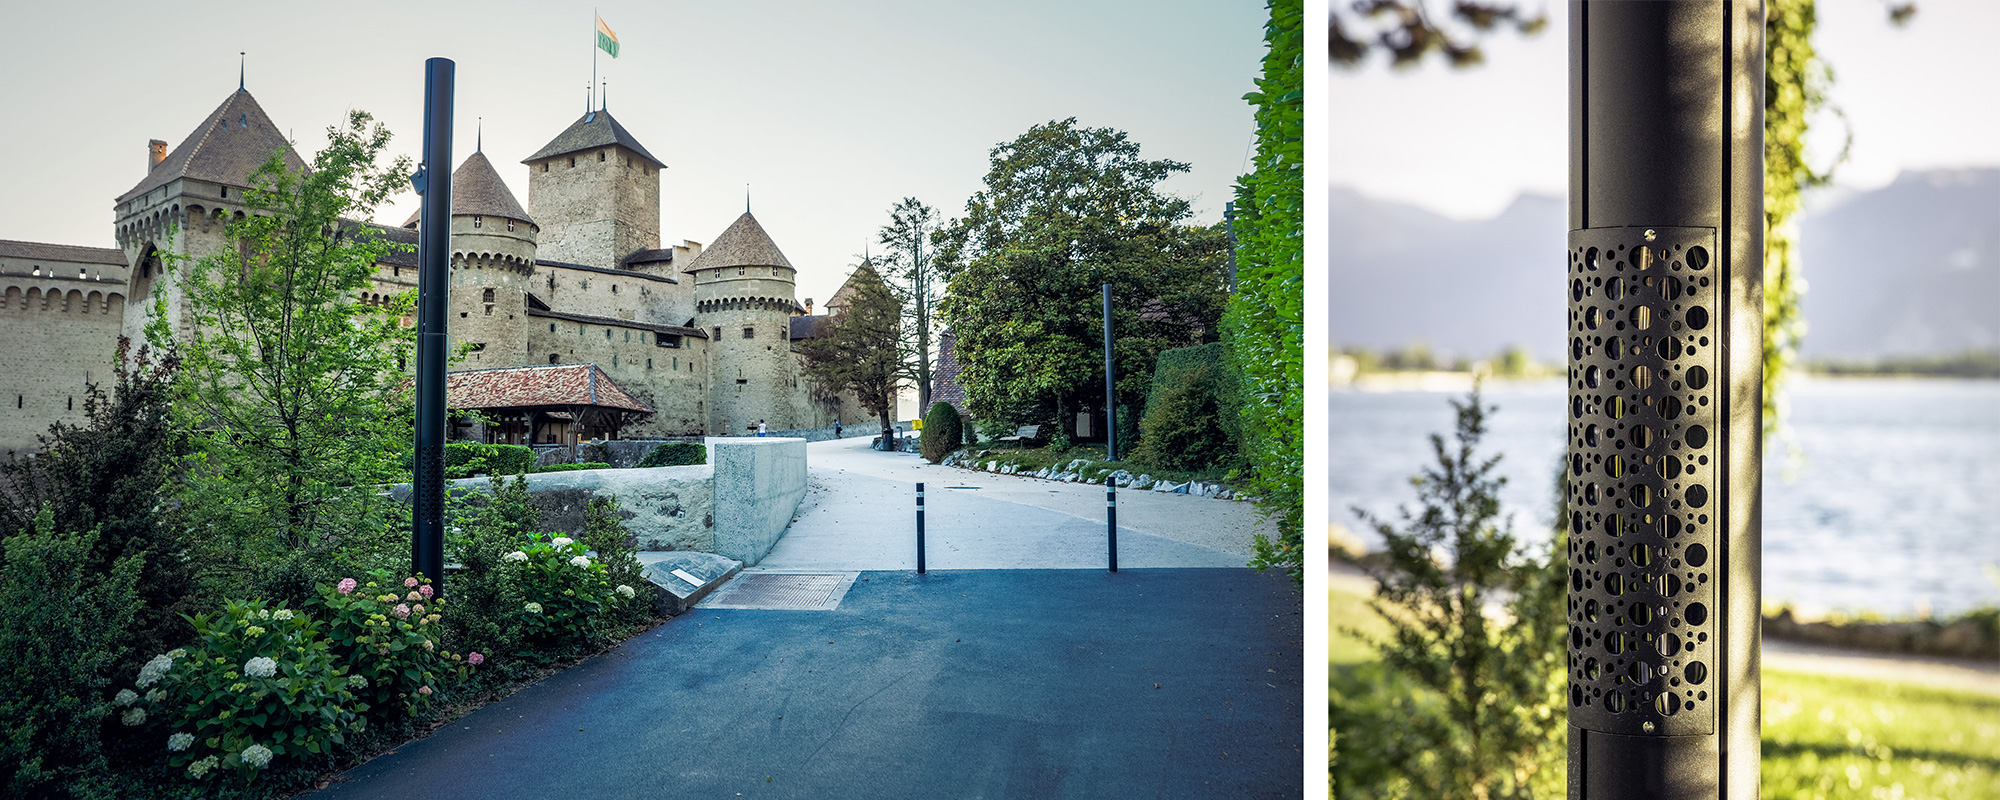 D_Montreux_Chateau-de-Chillon1